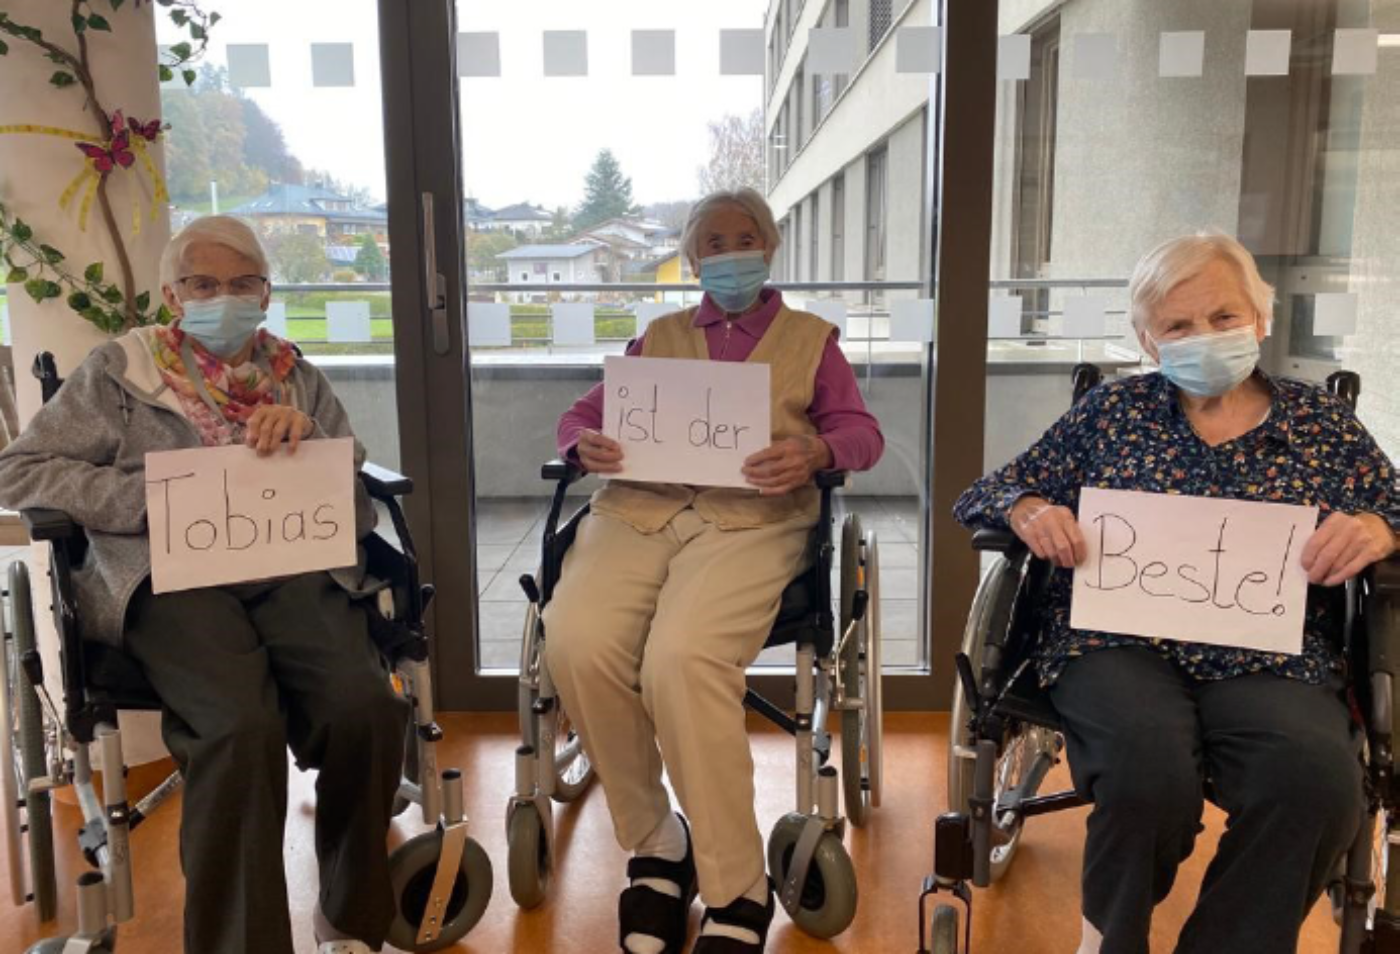 Drei Seniorinnen halten Schilder in den Händen mit der Aufschrift "Tobias ist der Beste".